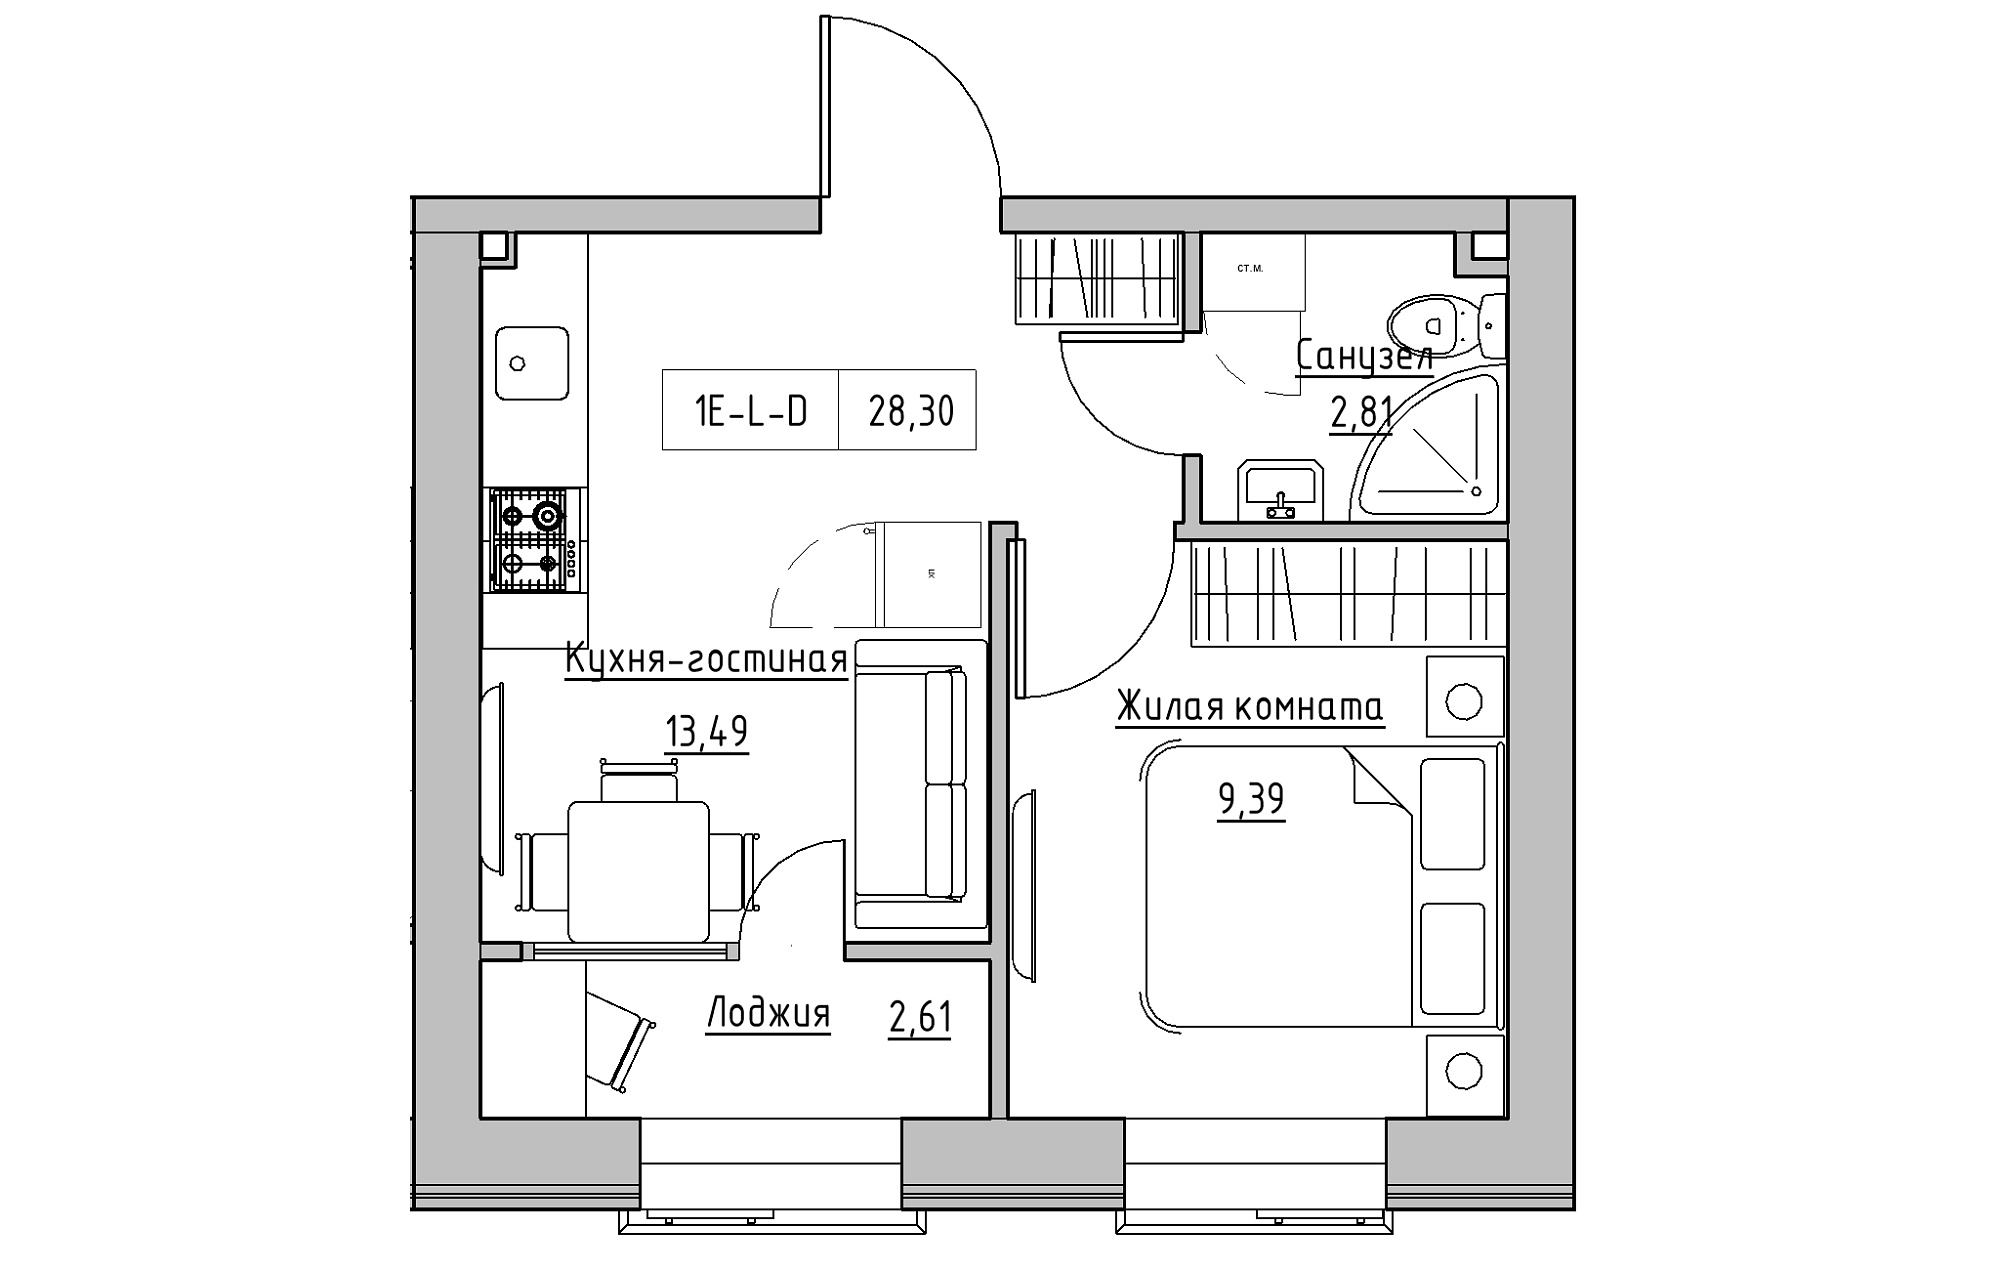 Планування 1-к квартира площею 28.3м2, KS-018-01/0001.